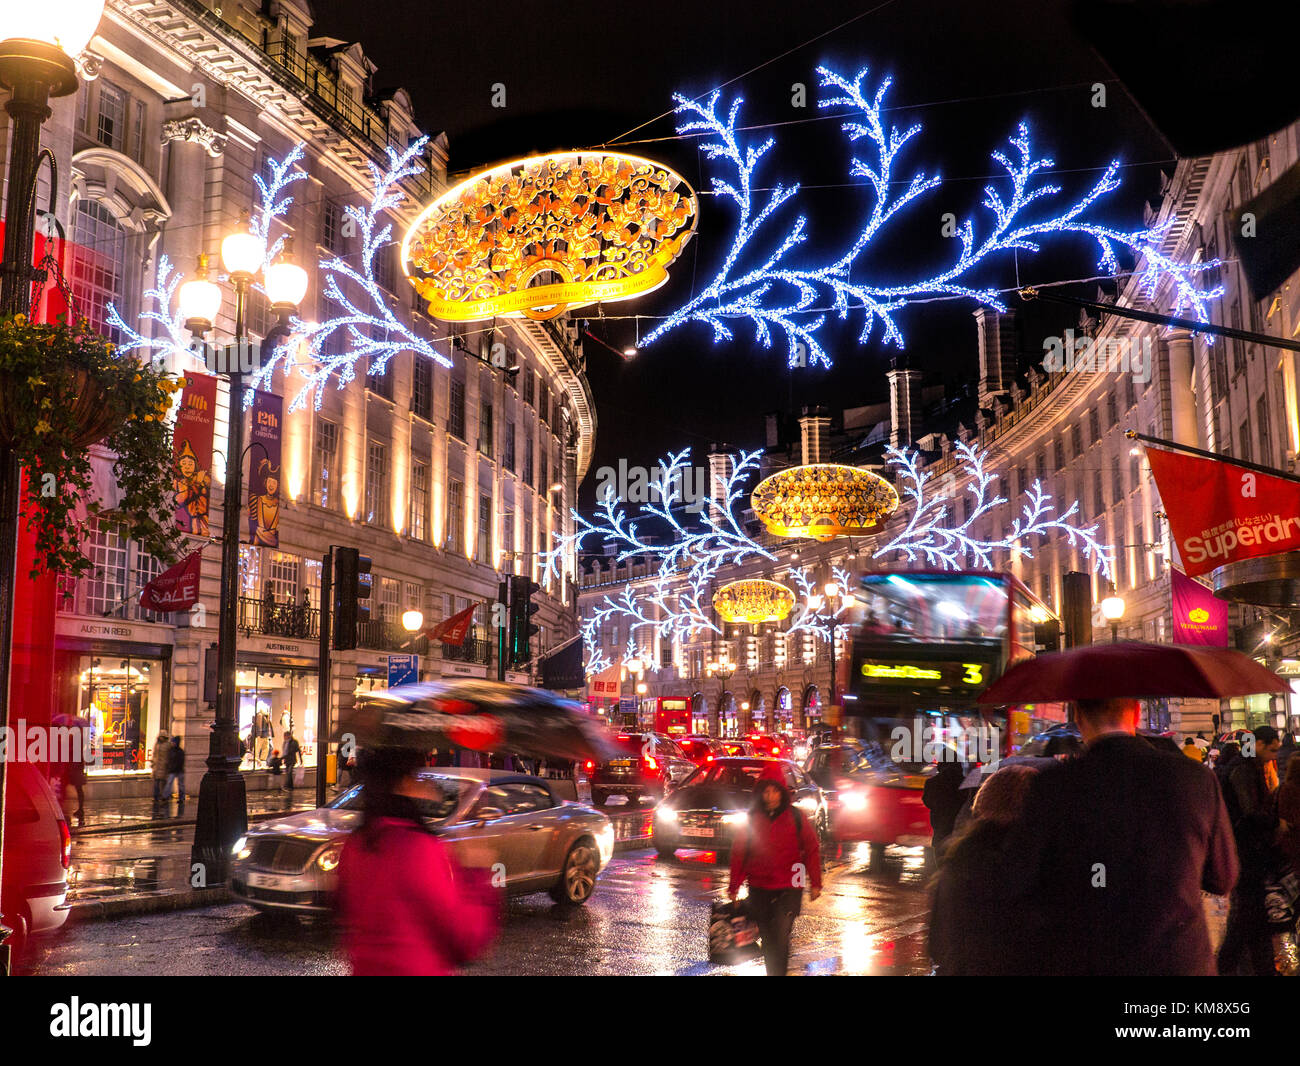 WEIHNACHTSVERKÄUFE SHOPPING LONDONER SZENE REGNET REGENT STRASSENLATERNEN LONDONER NACHT geschäftige Actionszene Weihnachtseinkäufer, verschwommener Verkehr und Regenschirme in einer regnerischen, nassen, glänzenden Regent Street mit Weihnachtslichtern über und hinter London UK Stockfoto